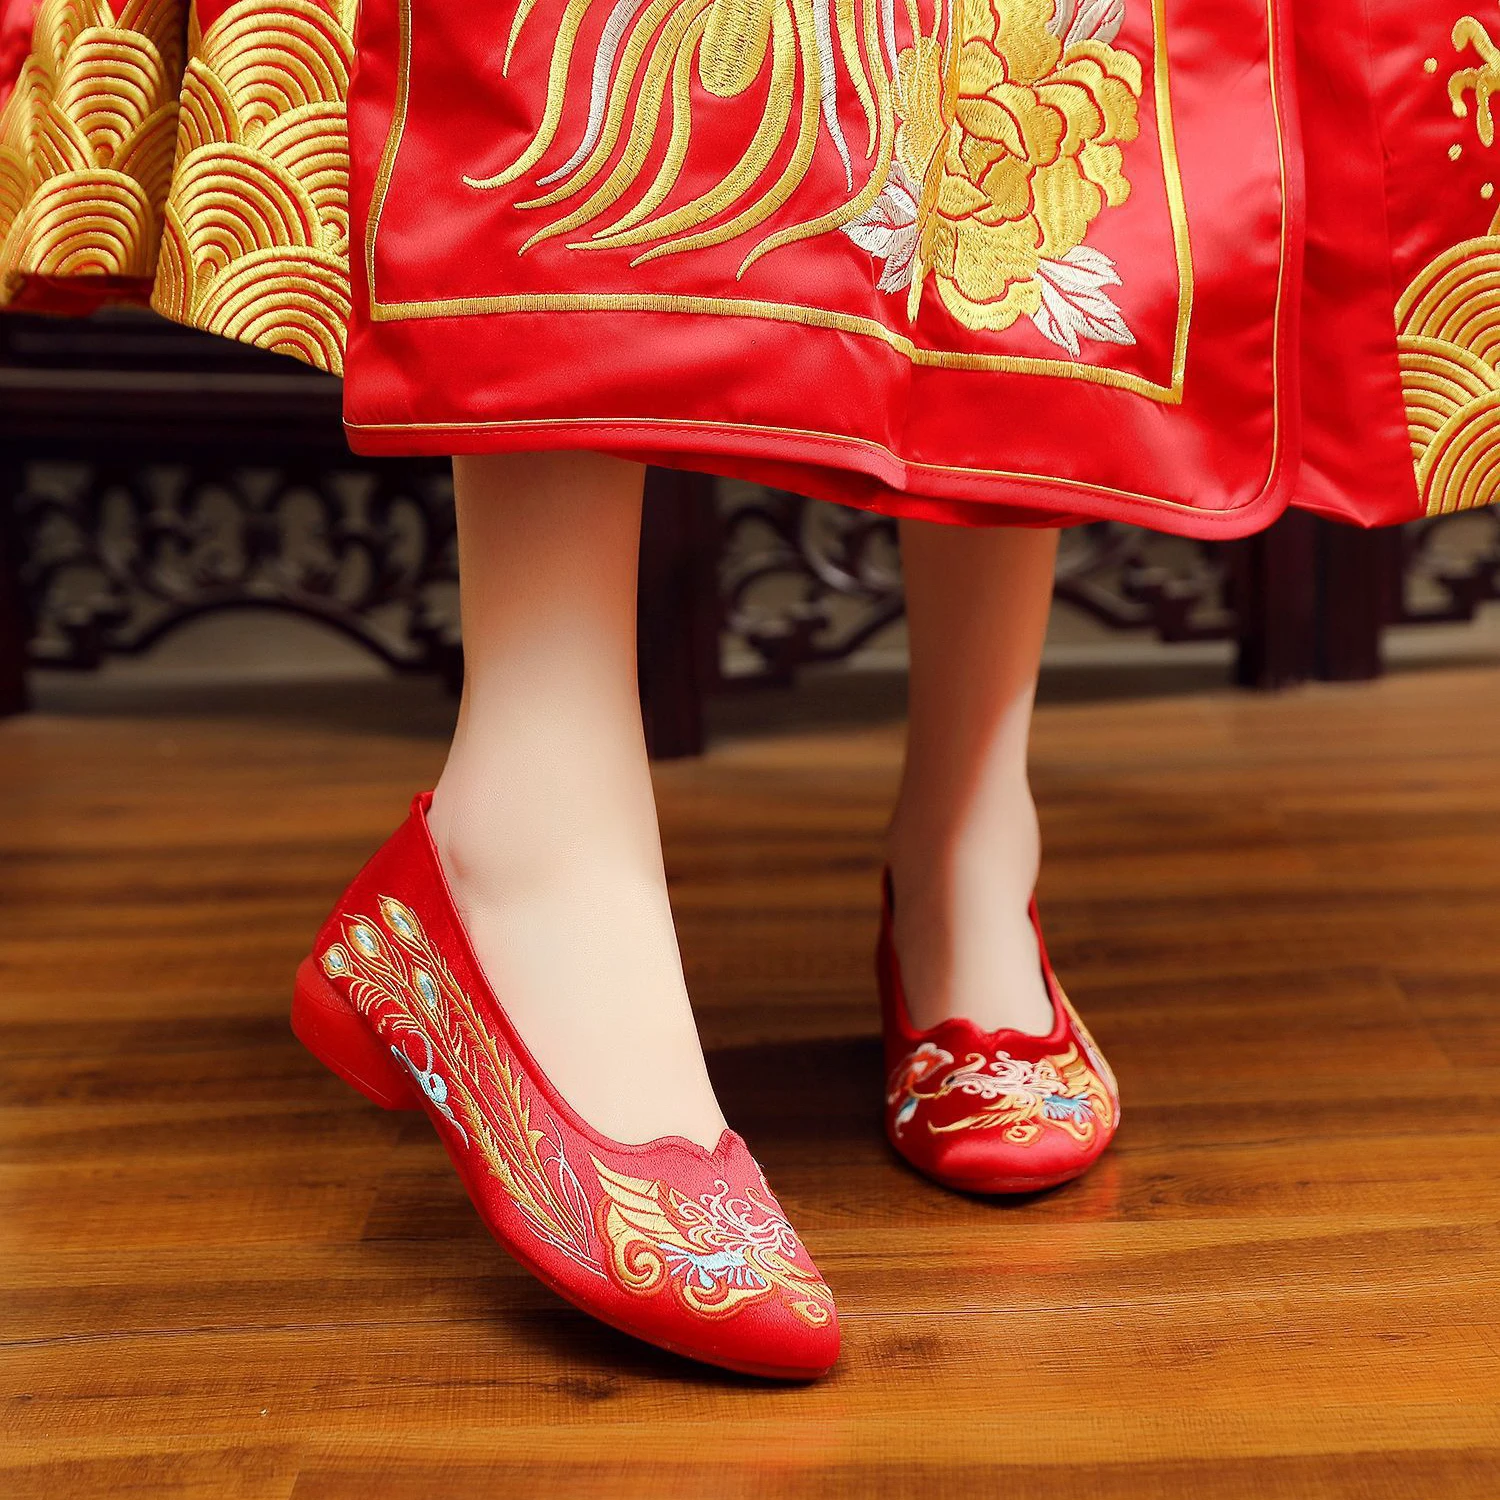 Традиционная китайская обувь женская. Корейская традиционная обувь. Китайская женская традиционная обувь свадьба. Китайские сапоги. Китайская подошва